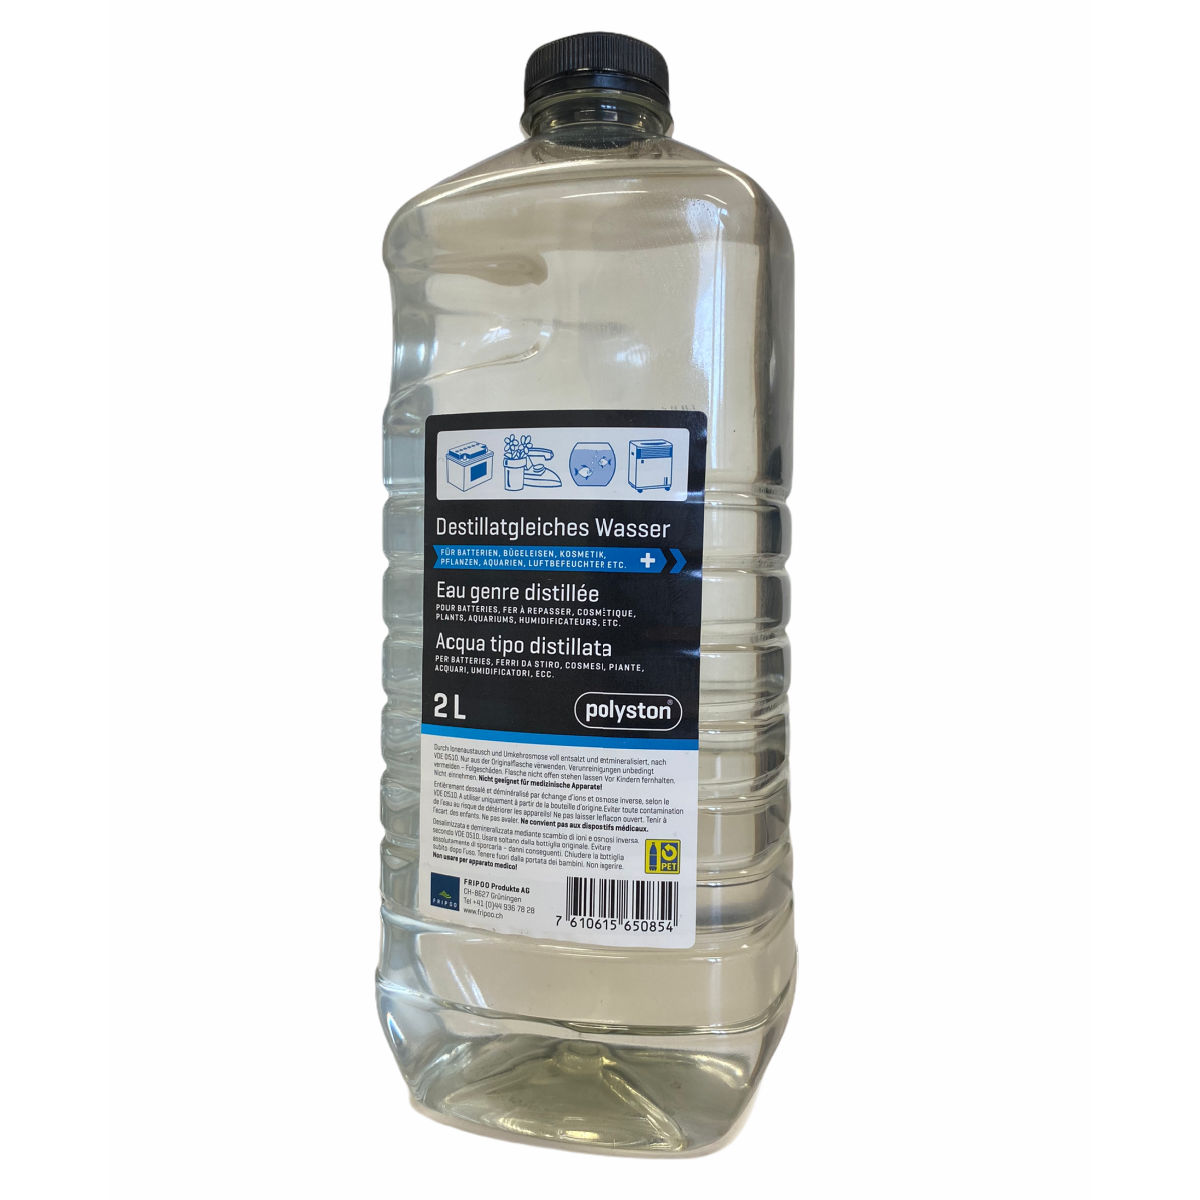 2L Destillatgleiches Wasser polyston® - FRIPOO WebShop